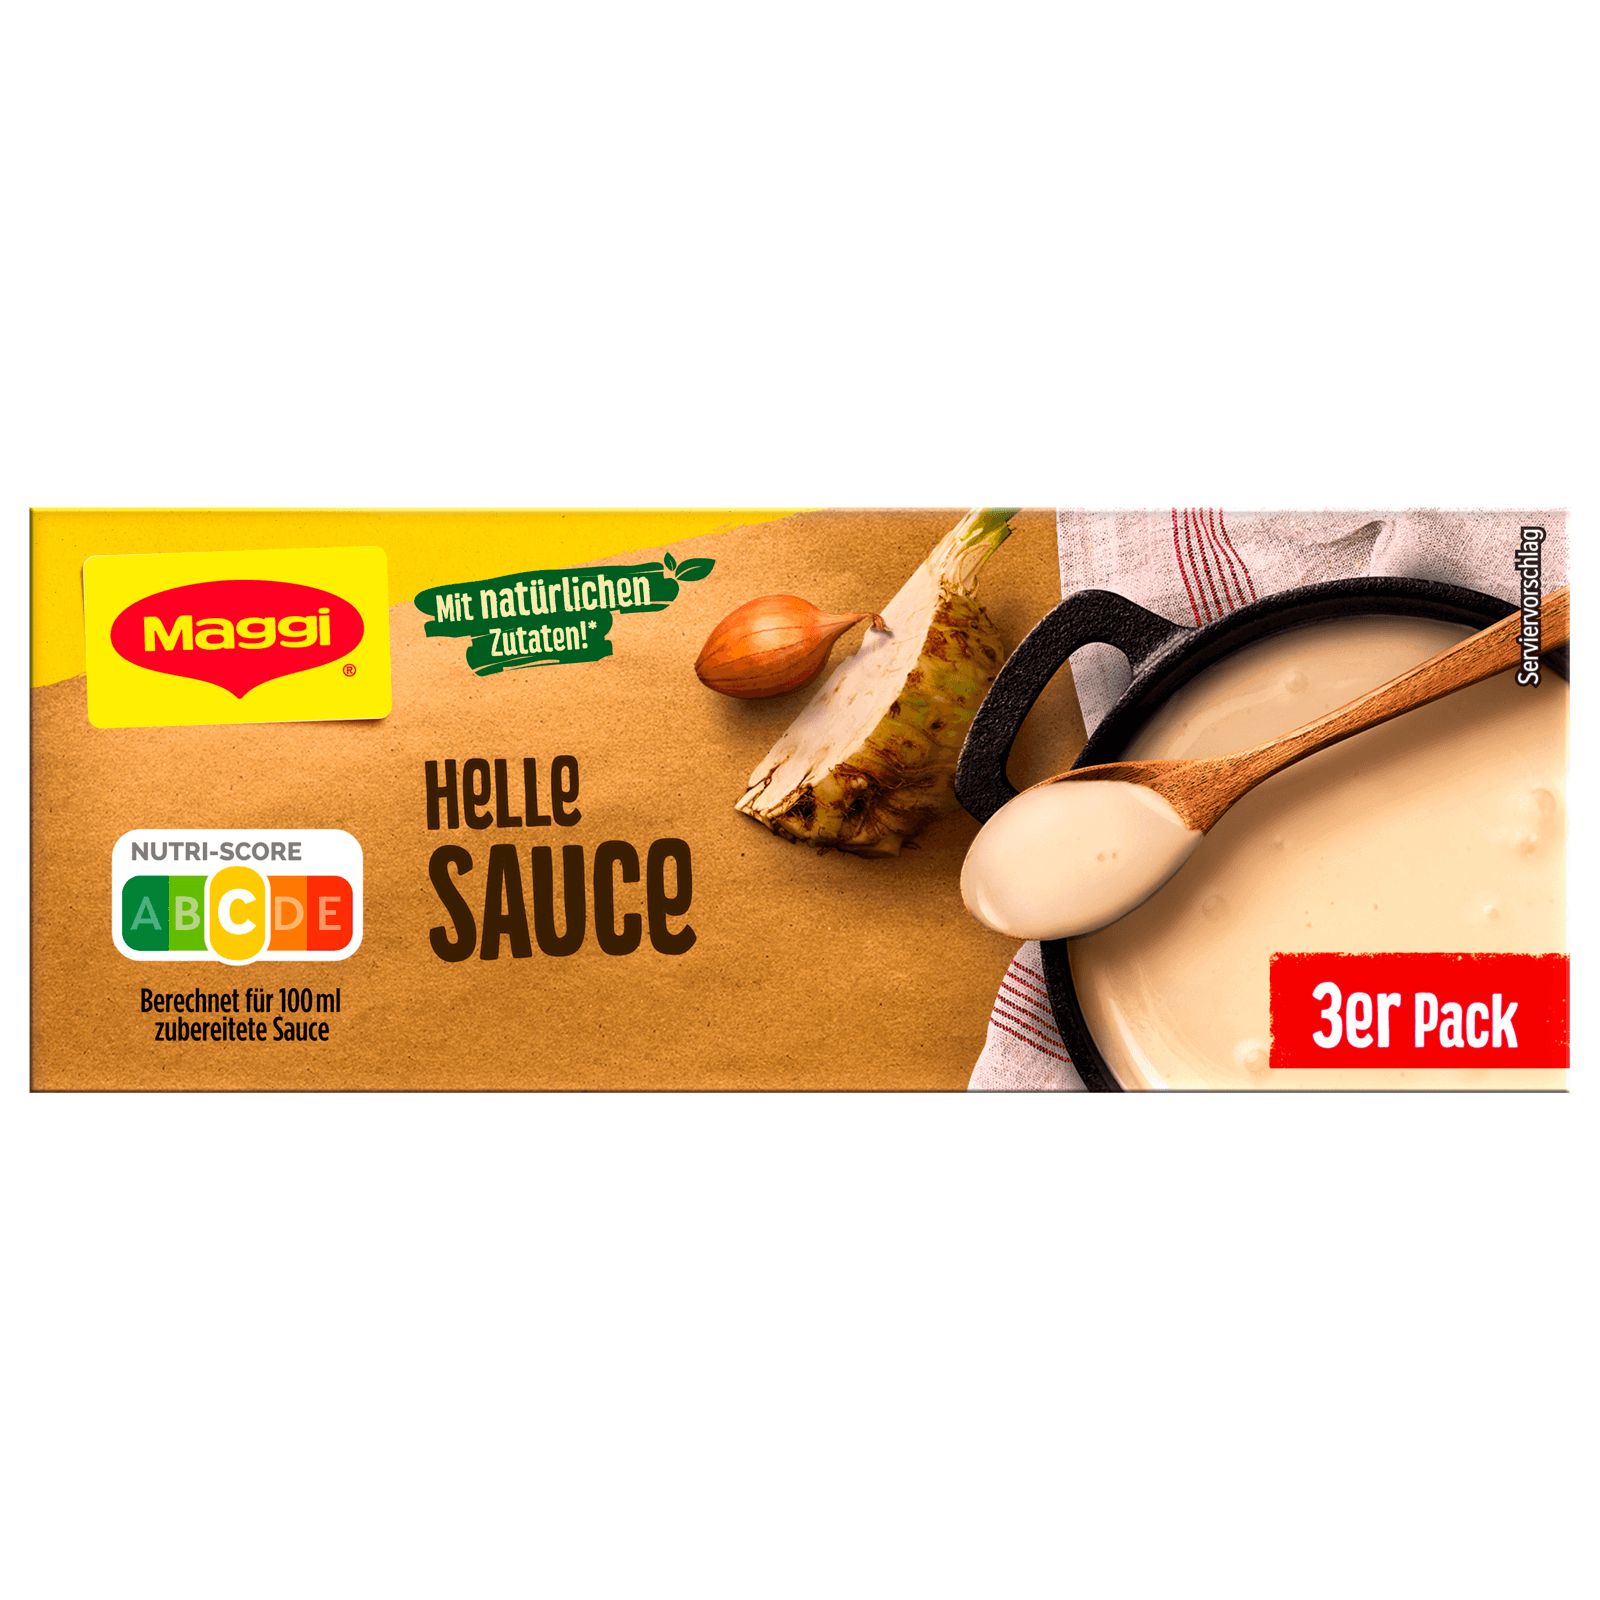 Maggi Helle Sauce 3er Pack ergibt 3 x 250ml bei REWE online bestellen!